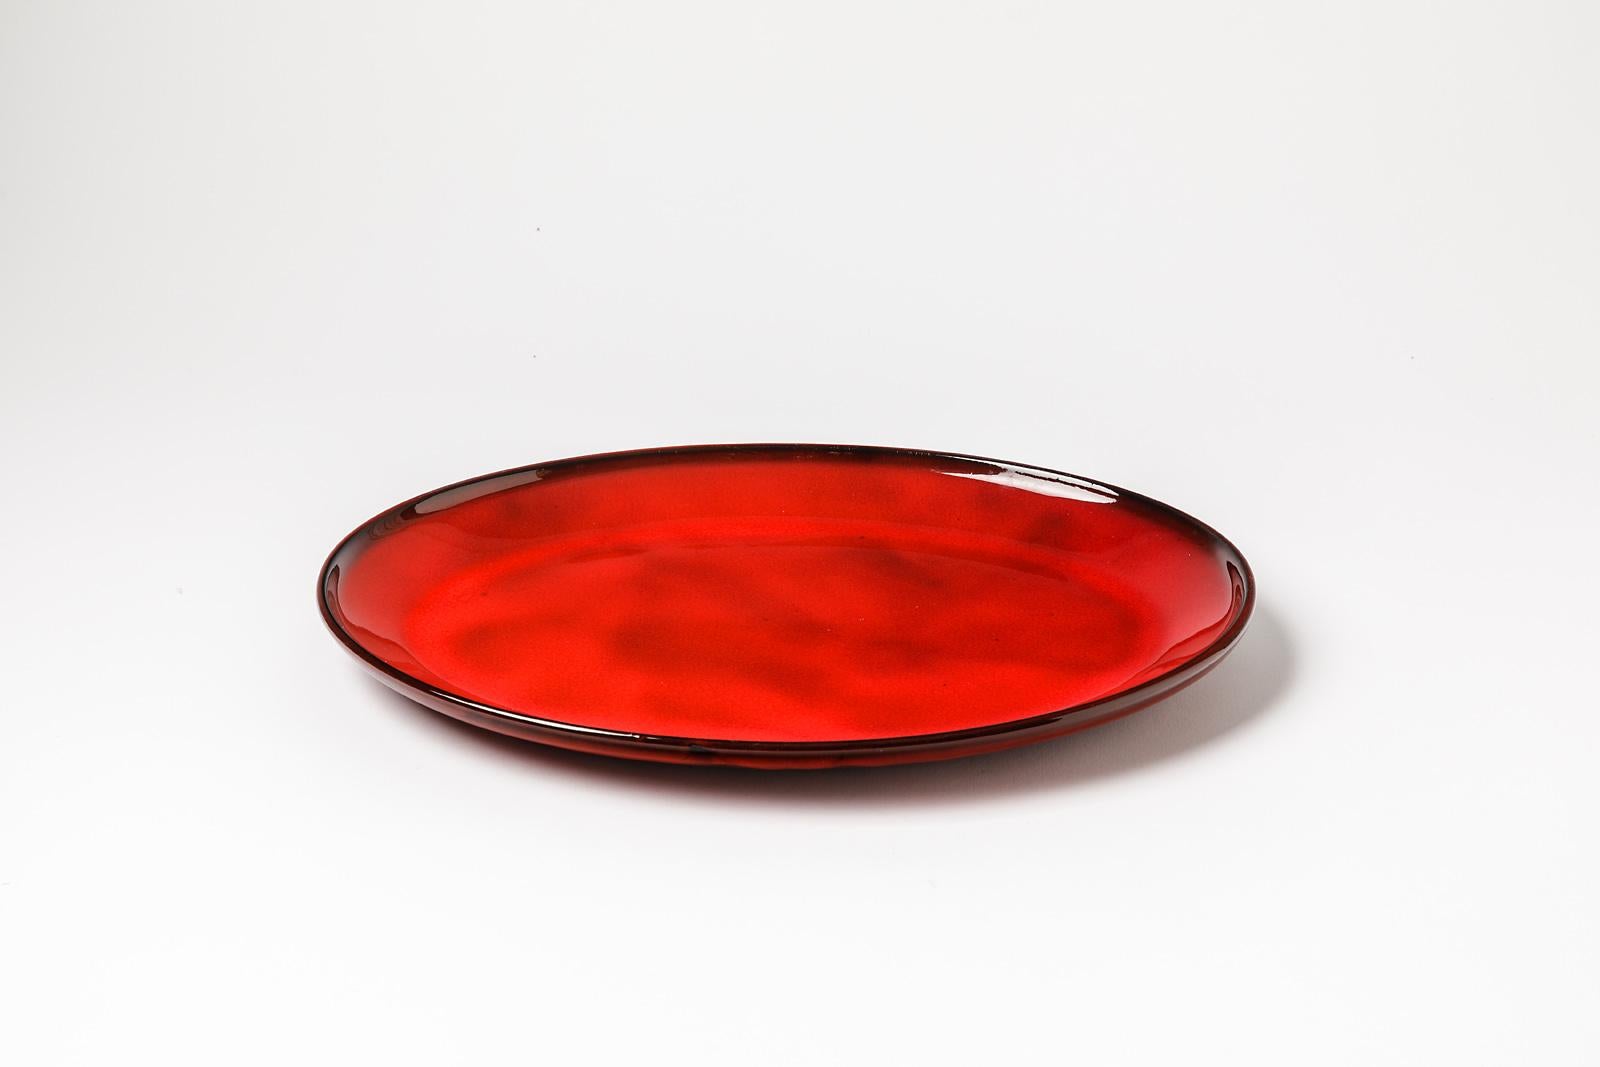 Gerard Hofmann

Réalisé à Vallauris vers 1950

Grande assiette originale en céramique rouge brillante

Condition originale parfaite.

Signé sous la base

Mesures : Hauteur 3 cm Largeur 35 cm Largeur 25 cm.